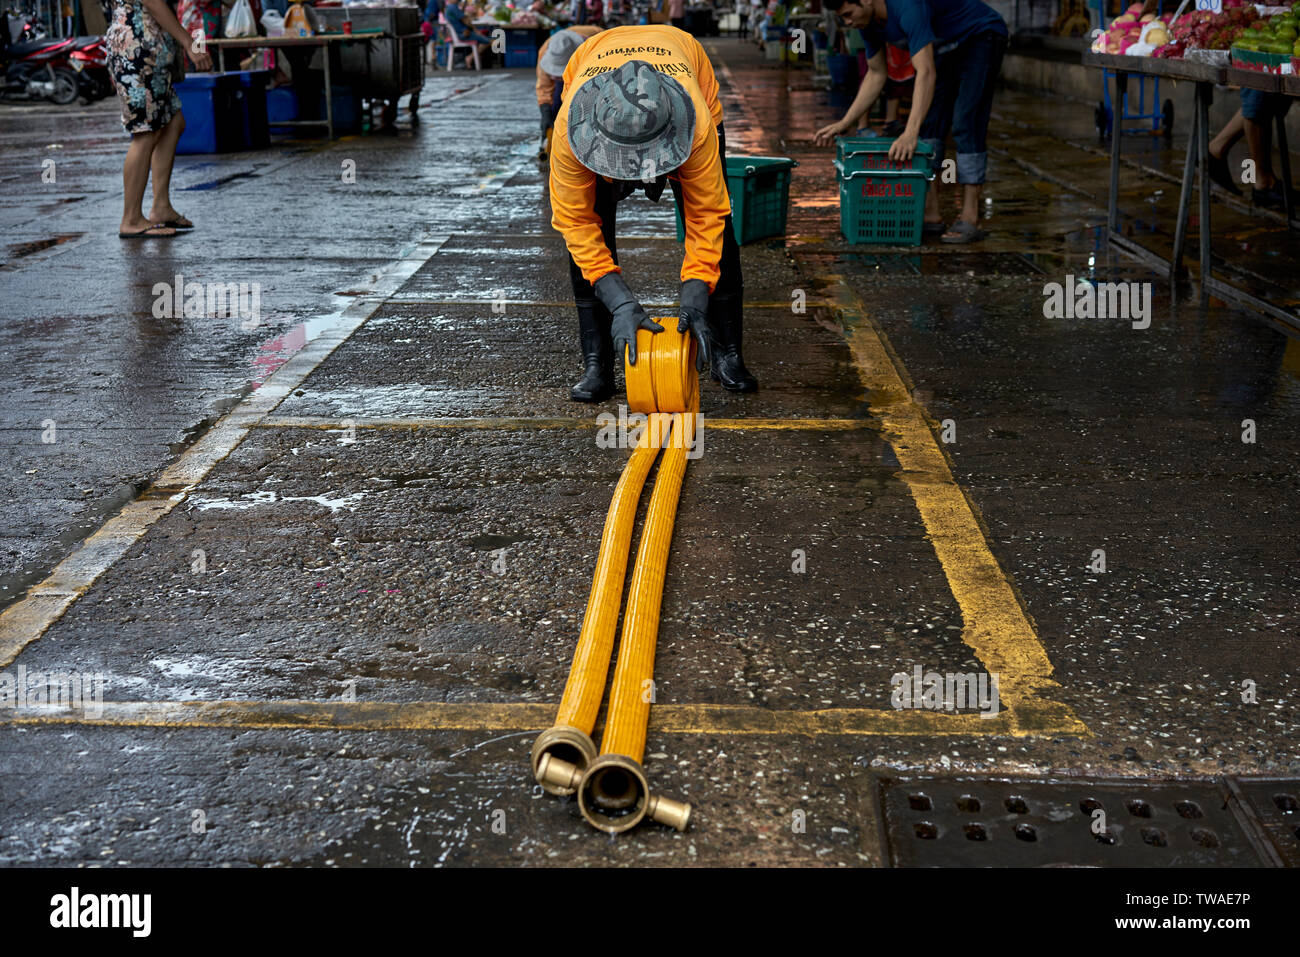 Straßenreinigung rollt den Schlauch nach der Reinigung zu einem Thailand markt Veranstaltungsort. Stockfoto